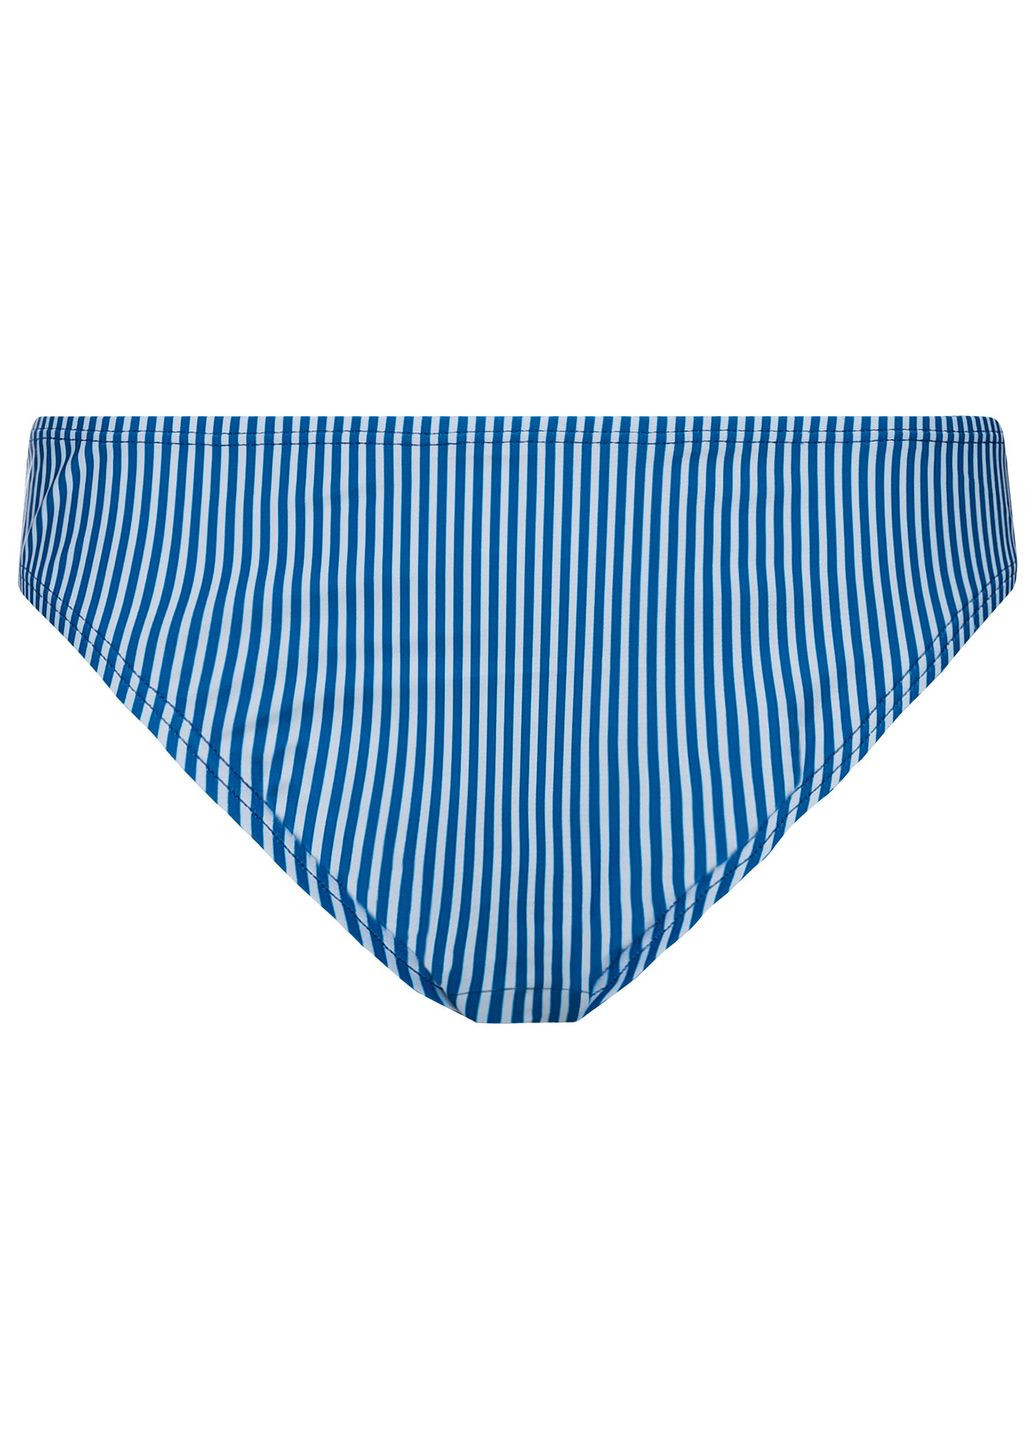 Синие нижняя часть купальника на подкладке для женщины 371922 34(xs) в полоску Esmara